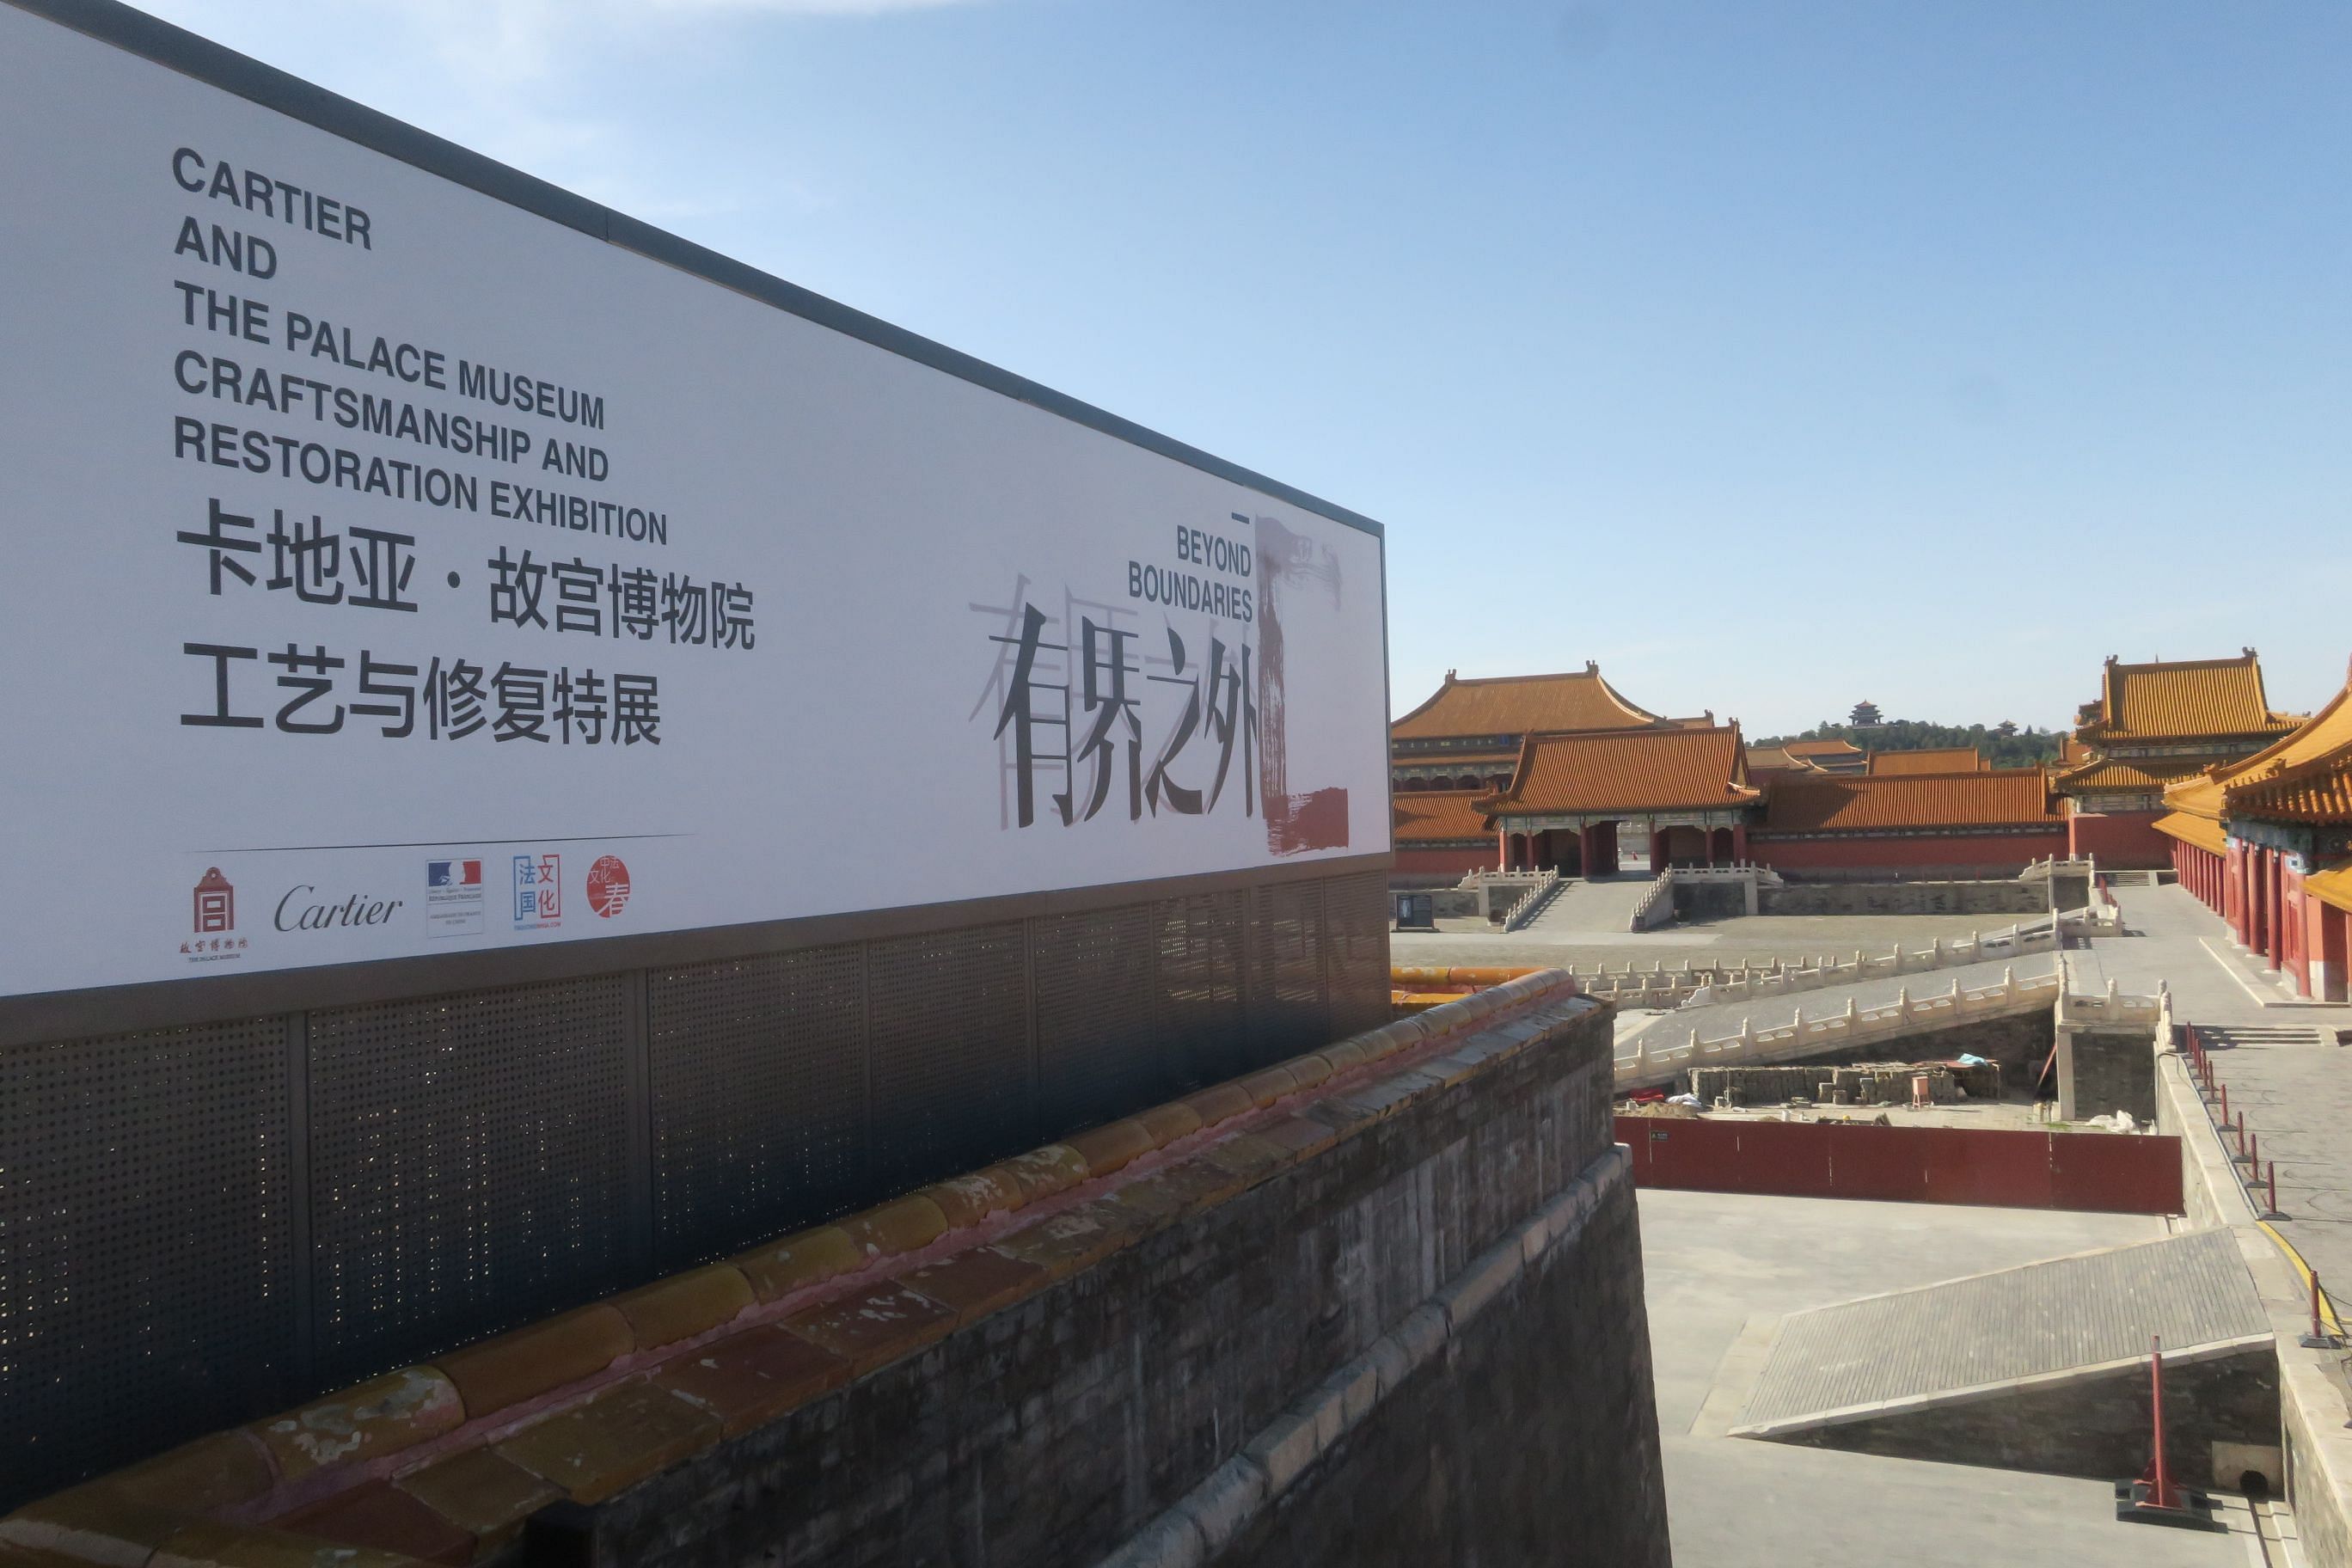 Cartier Beijing Palace Museum Beyond Boundaries